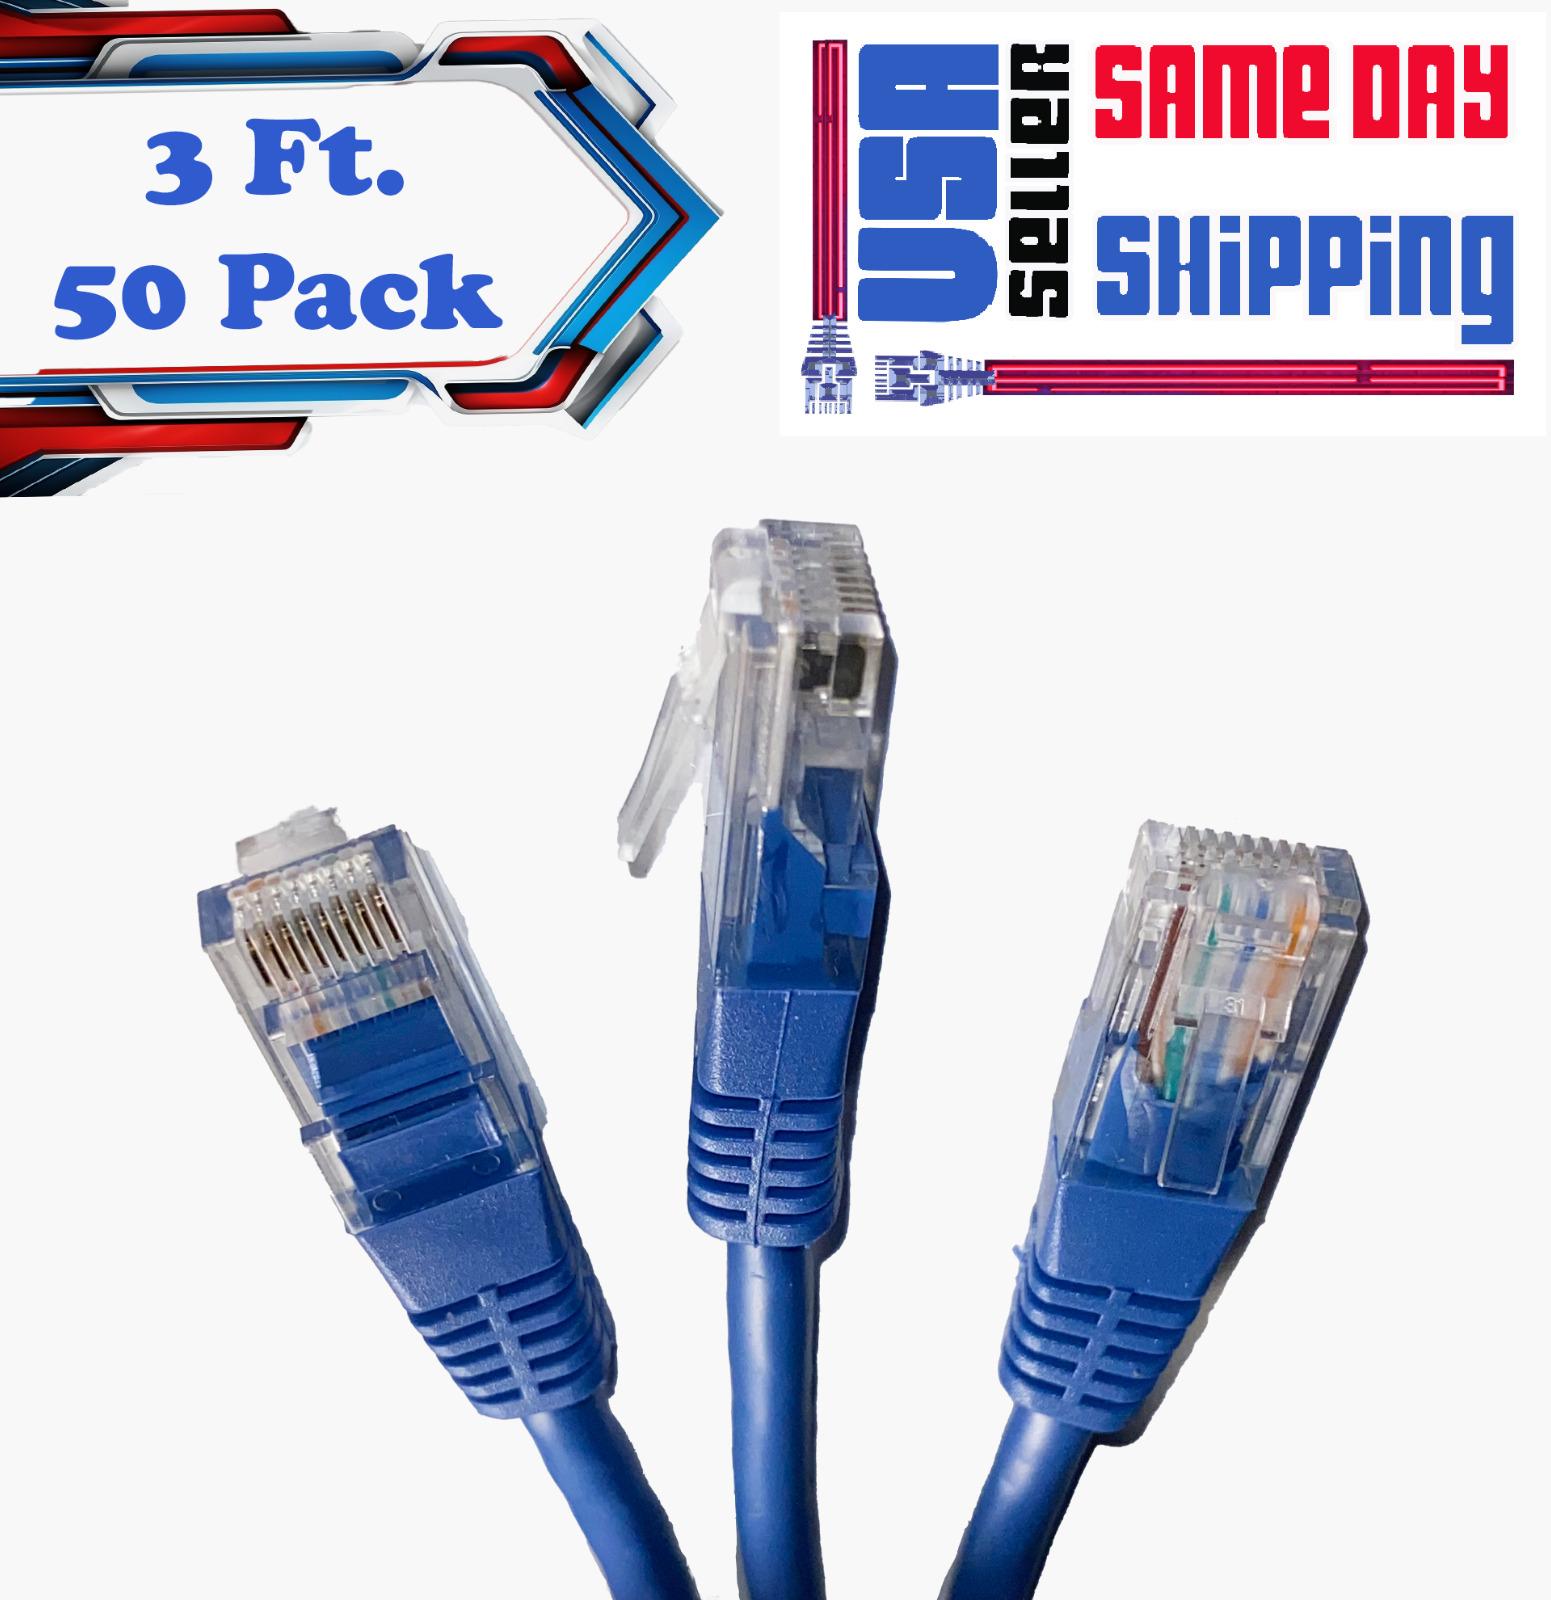 50 Pcs 3 FT CAT6 550 MHz UTP Ethernet Network Patch Cable Blue